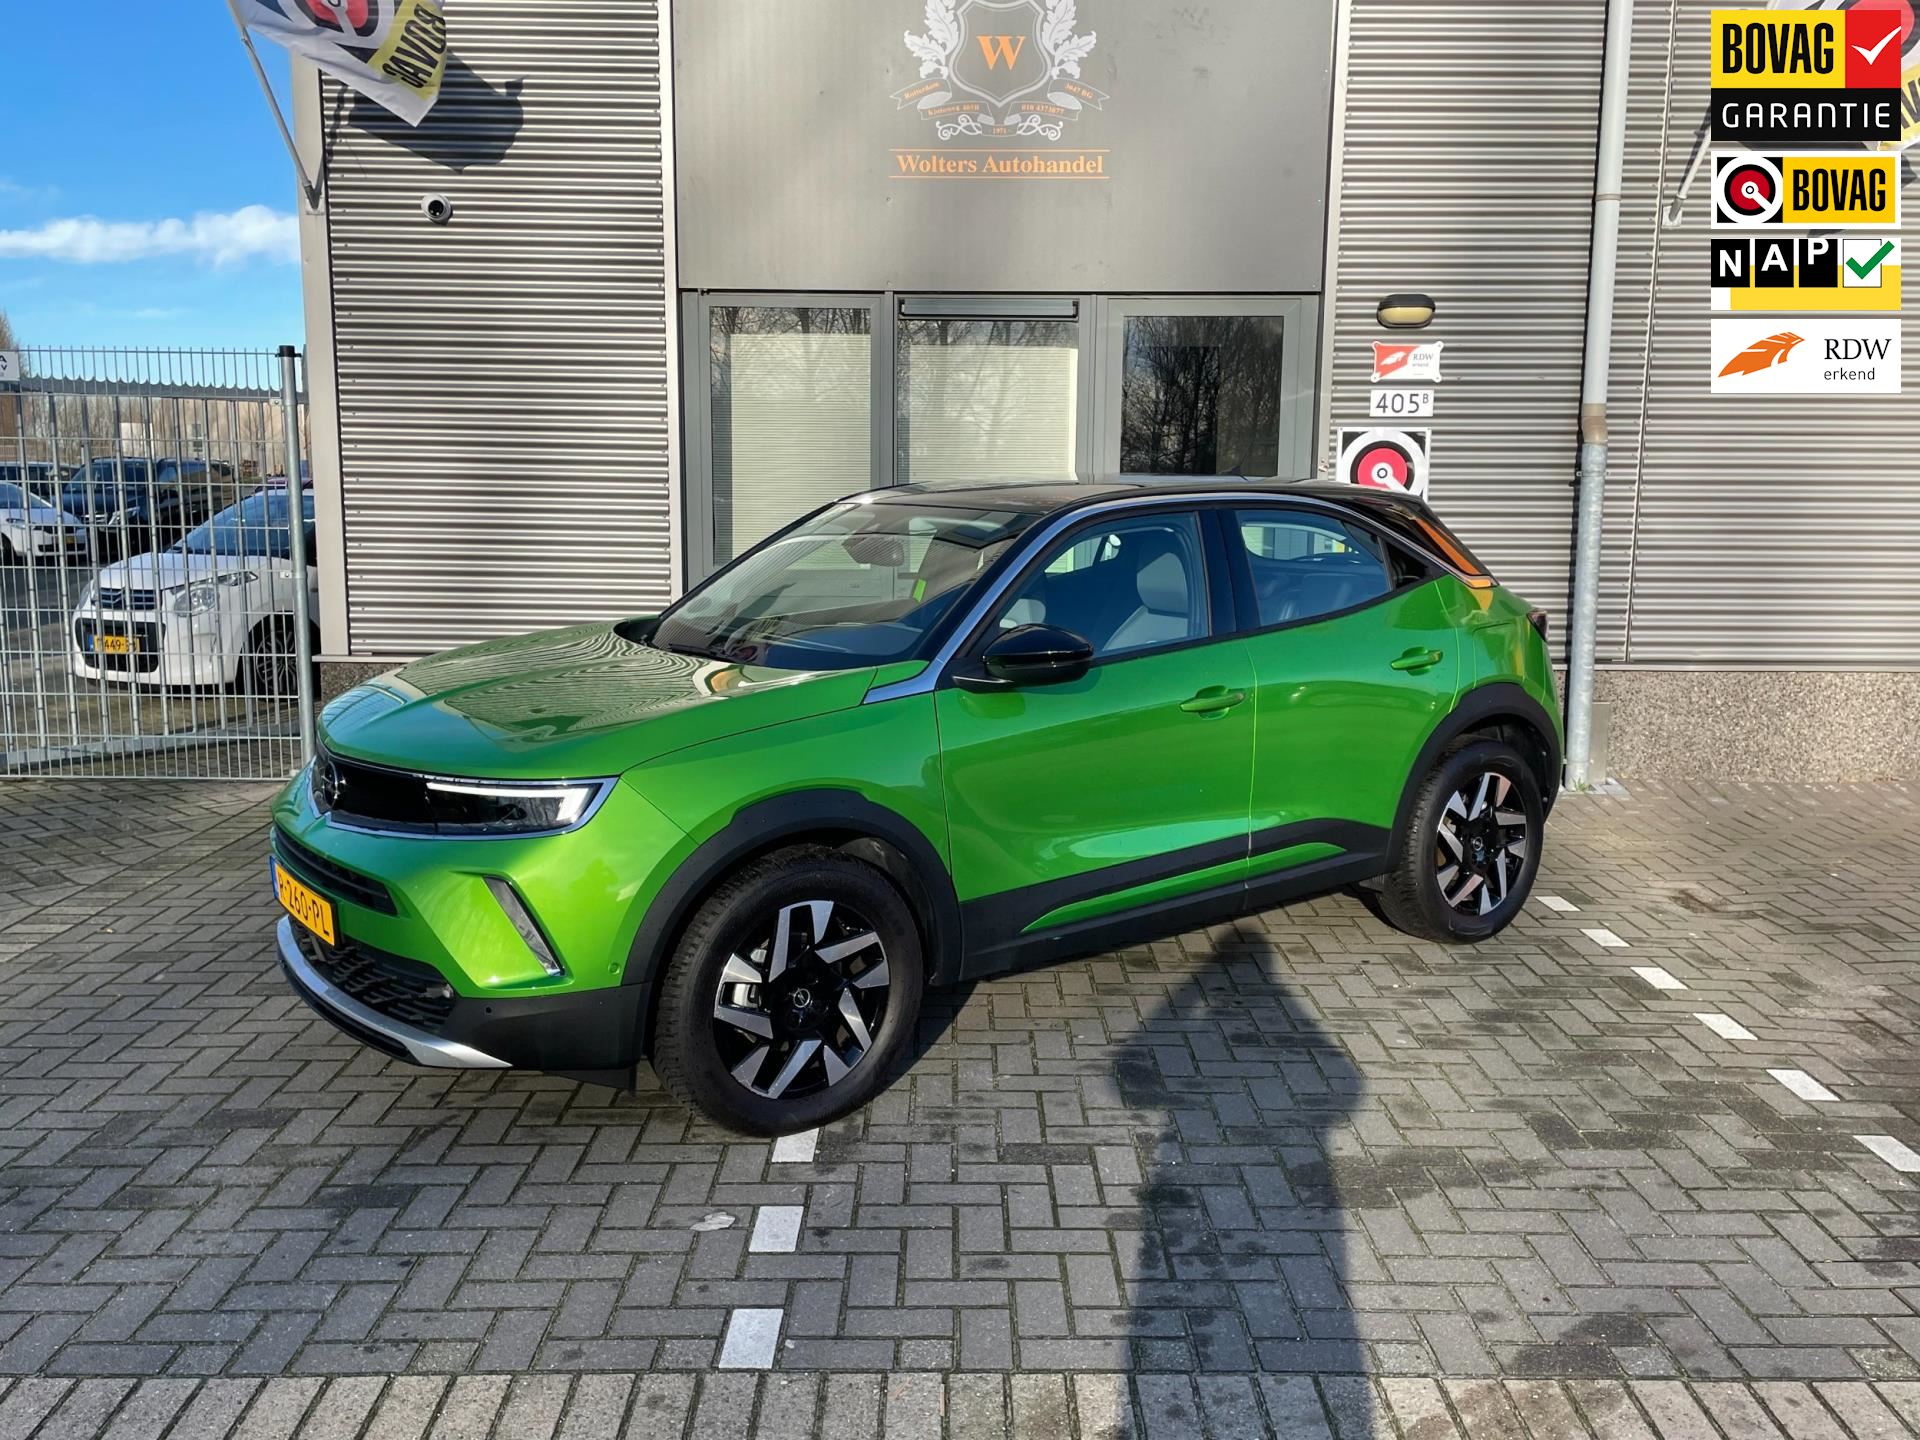 Opel MOKKA occasion - Wolters Autohandel